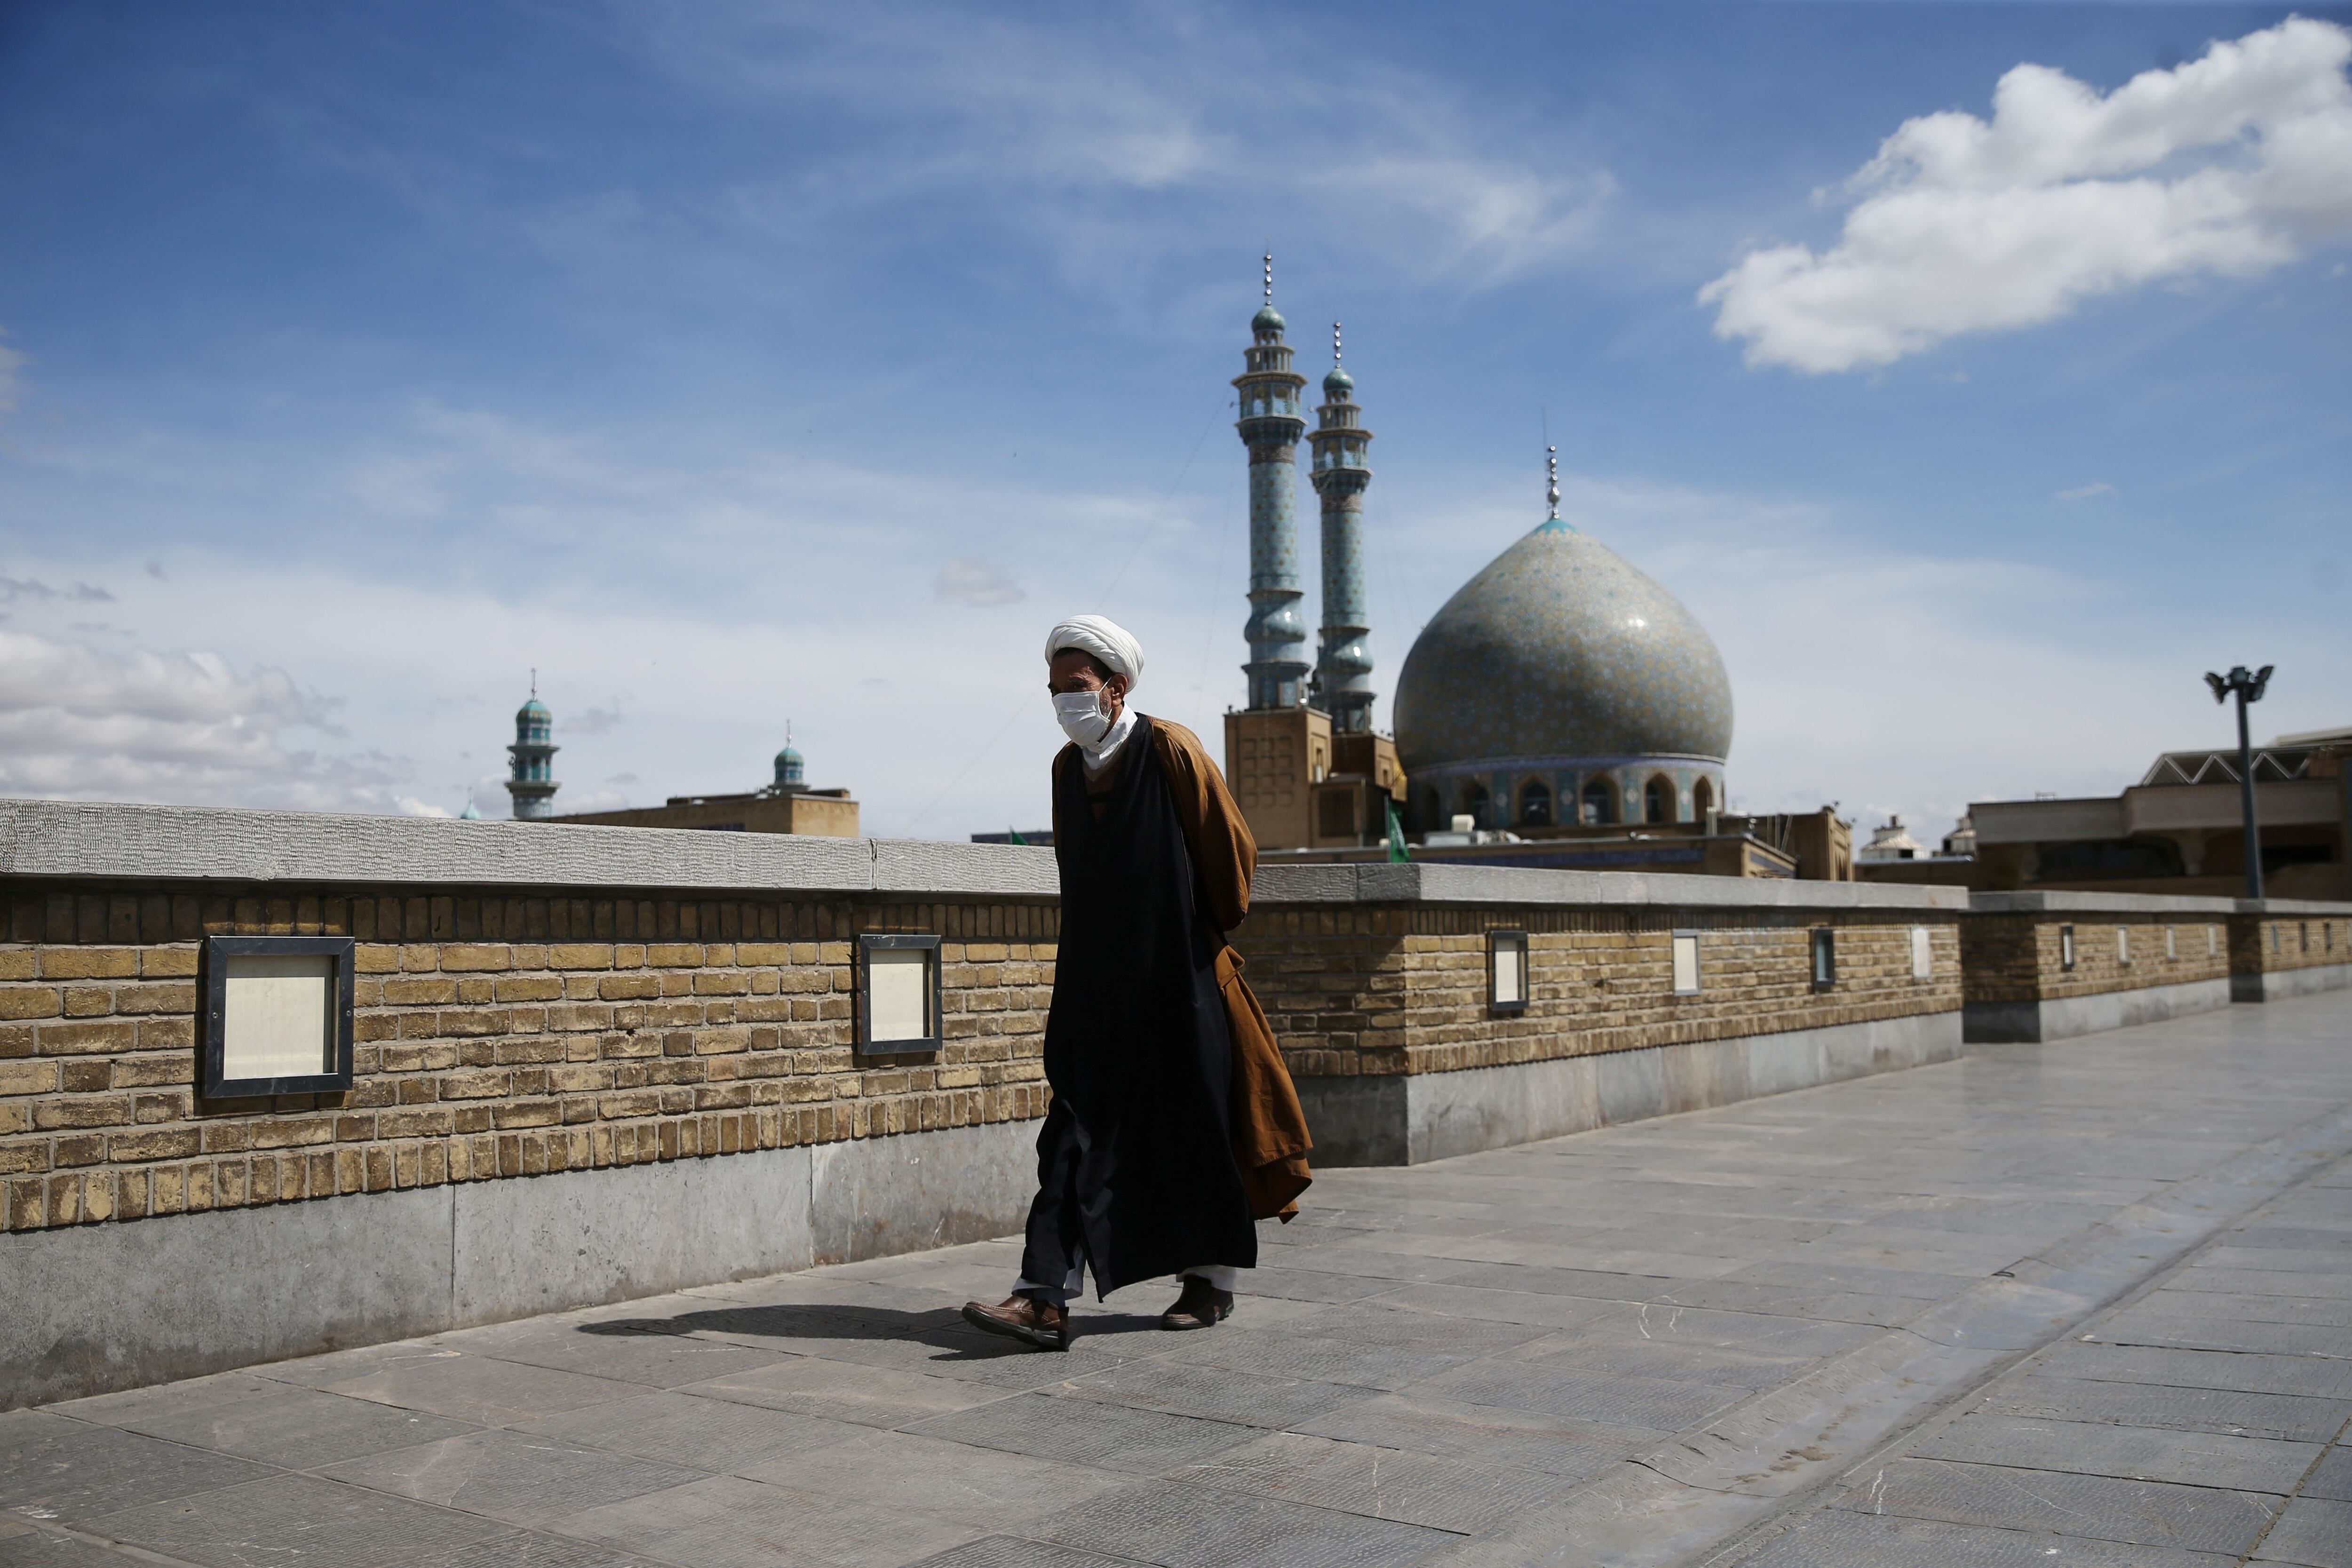 Un clérigo con mascarilla protectora camina por la calle en Qom, Irán 24 de marzo de 2020. Fotografía tomada el 24 de marzo de 2020. WANA (Agencia de Noticias de Asia Occidental) vía REUTERS/Archivo